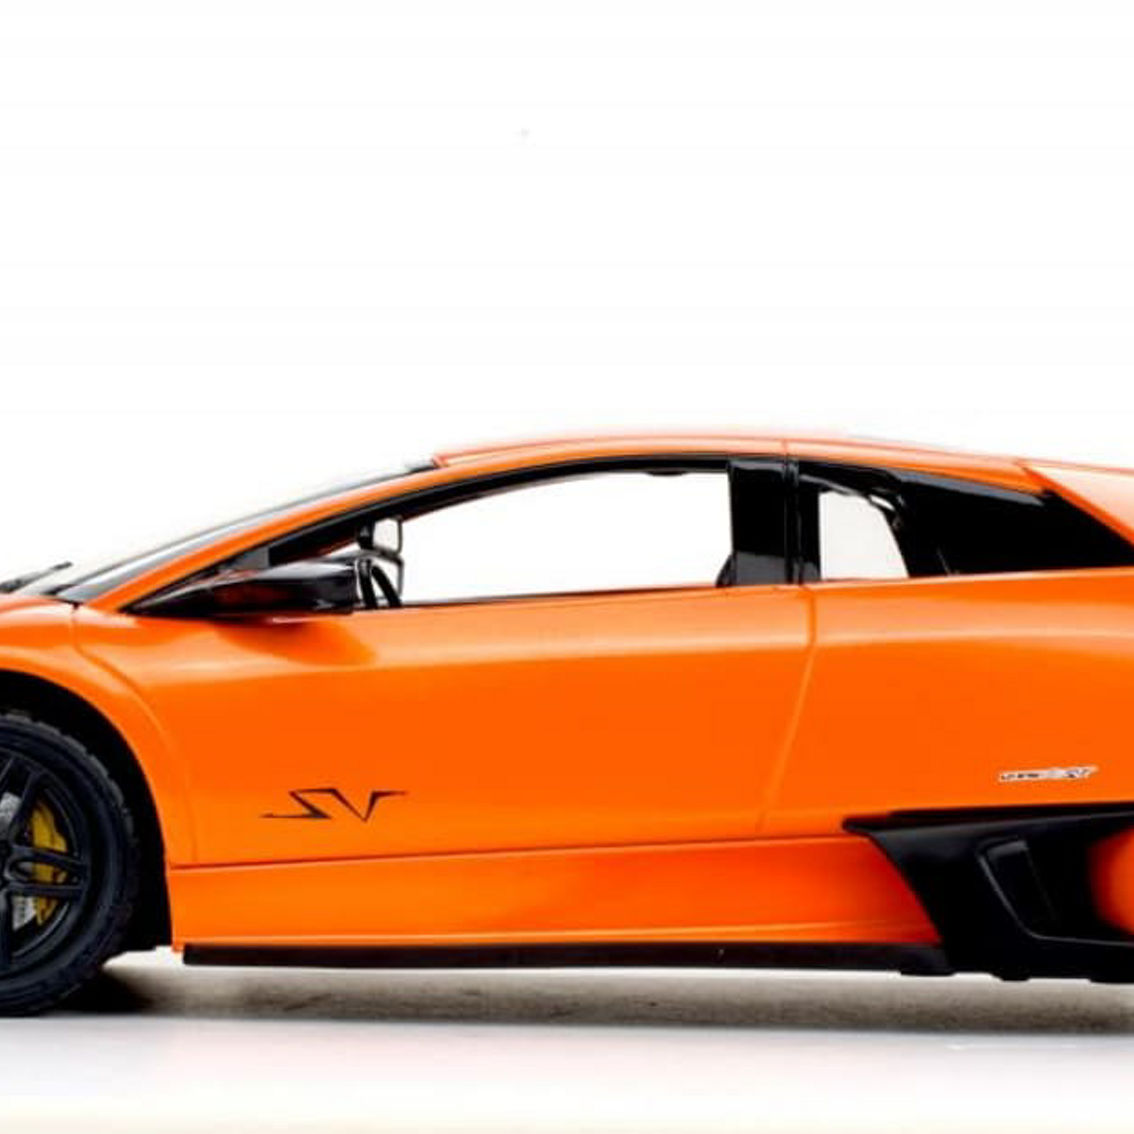 38900-O R/C 1:14 Lamborghini Murcielago LP670-4 - Orange - Image 3 of 5